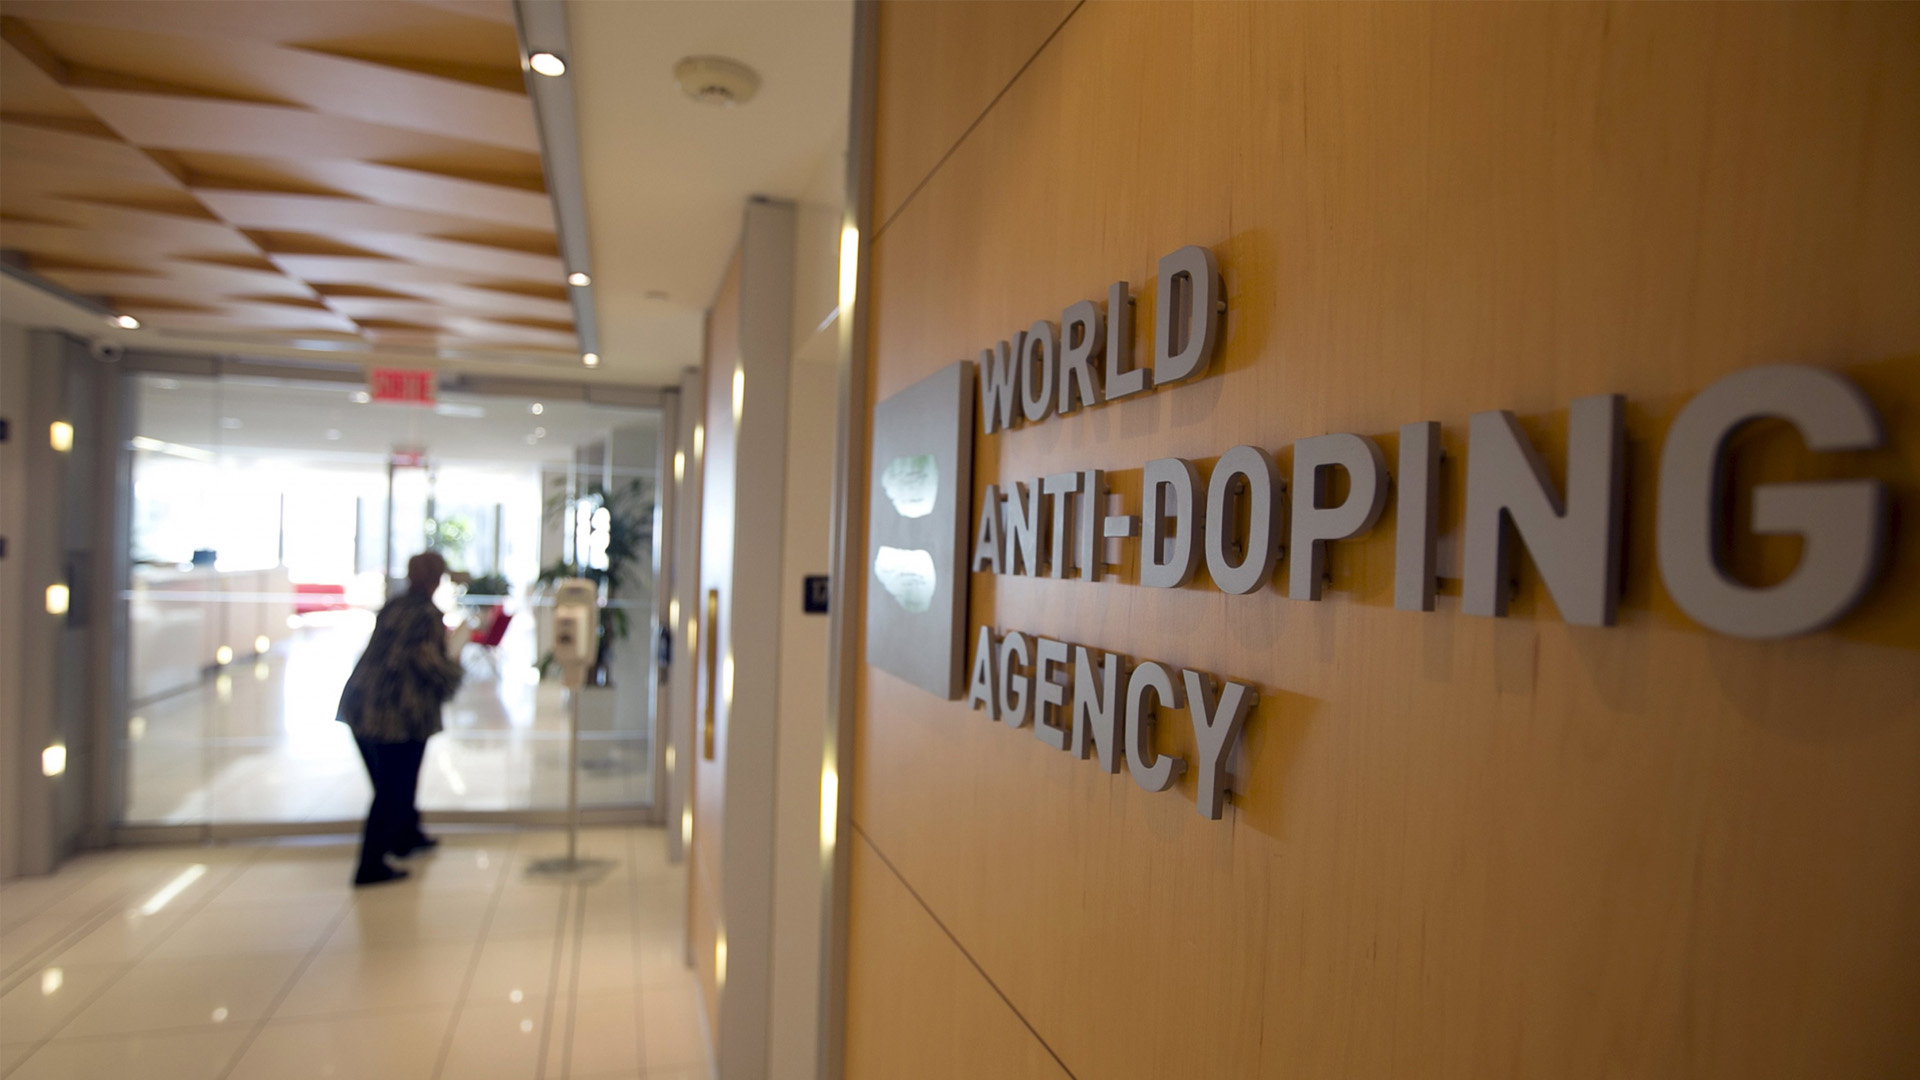 Los criminales lograron acceder a la información confidencial de la Agencia Mundial Antidoping